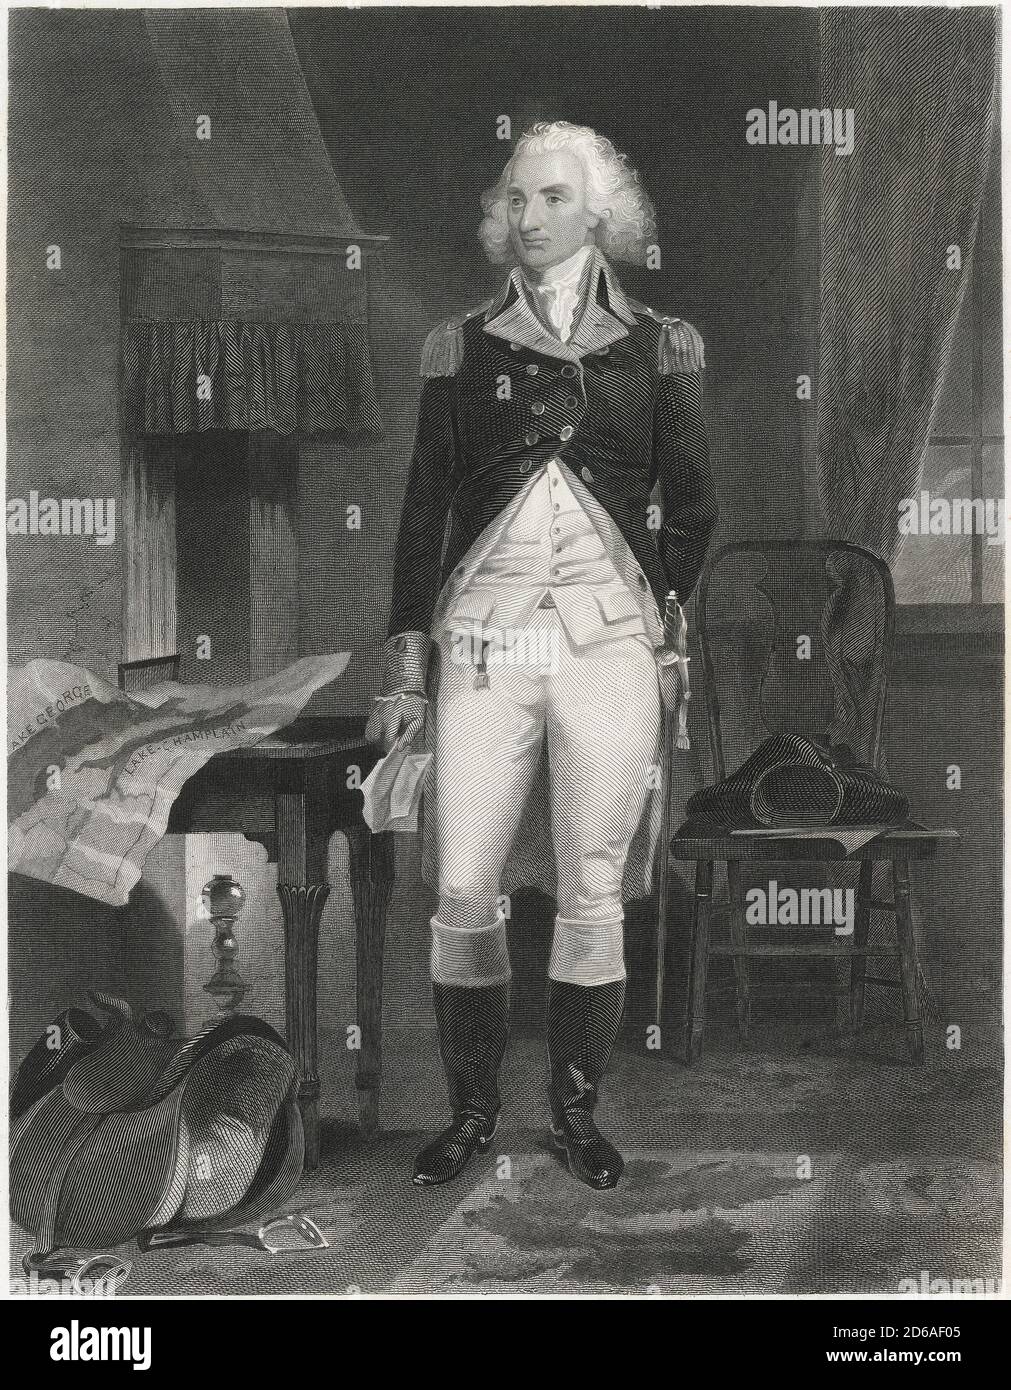 Incisione antica c1870, Philip Schuyler. Philip John Schuyler (New York, 1733 – New York, 1804) è stato un . FONTE: INCISIONE ORIGINALE Foto Stock